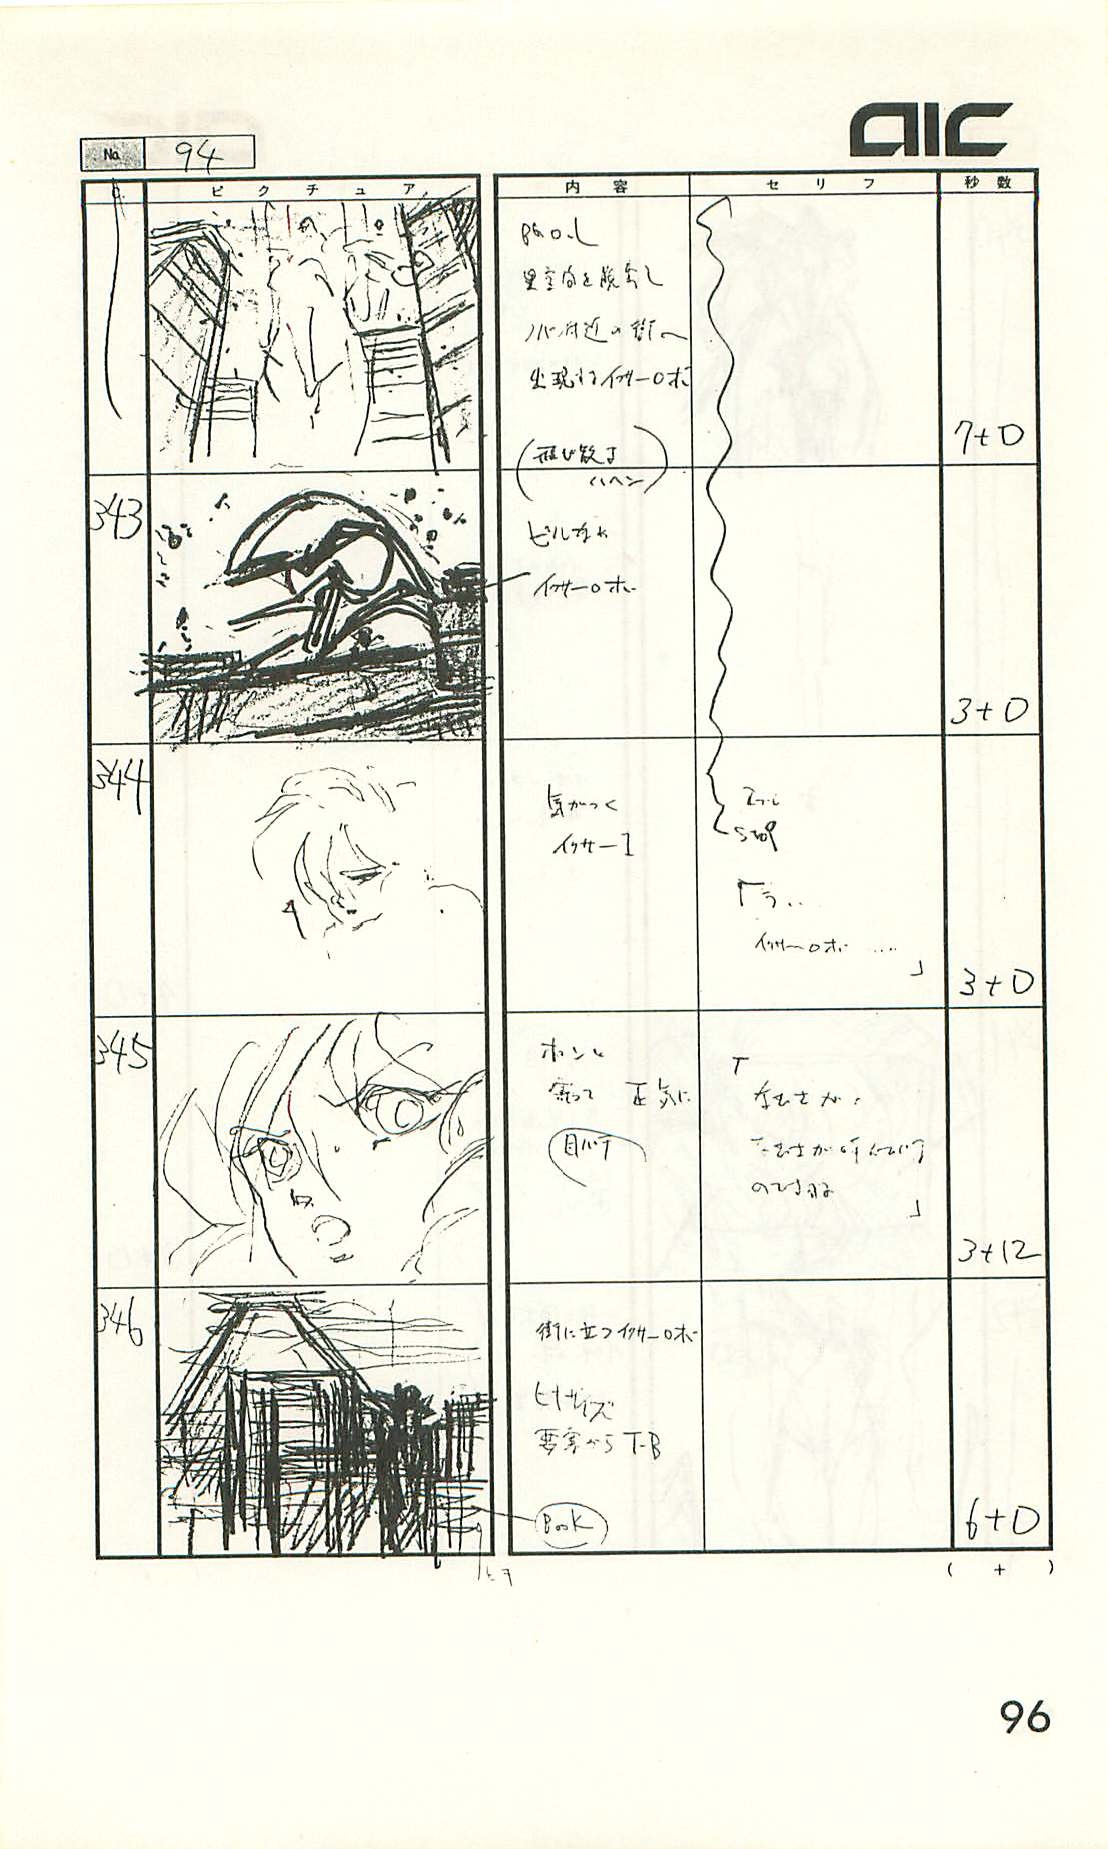 Iczer-One OVA 3 Storyboards 96